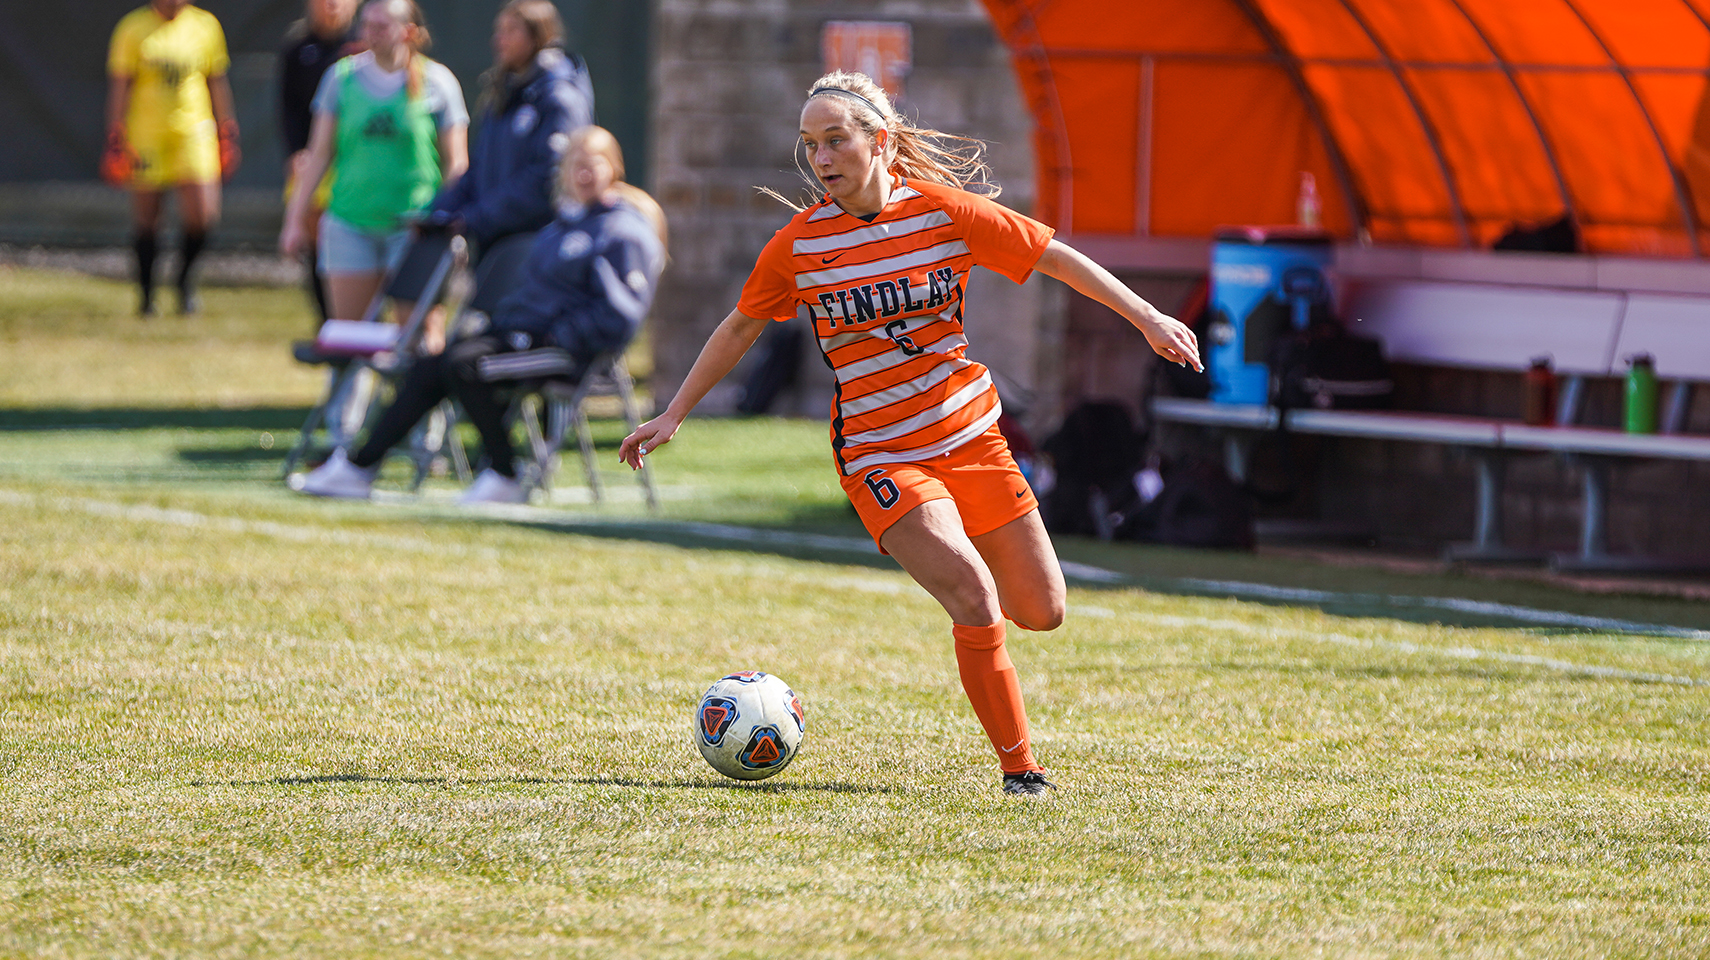 women's soccer player in orange running